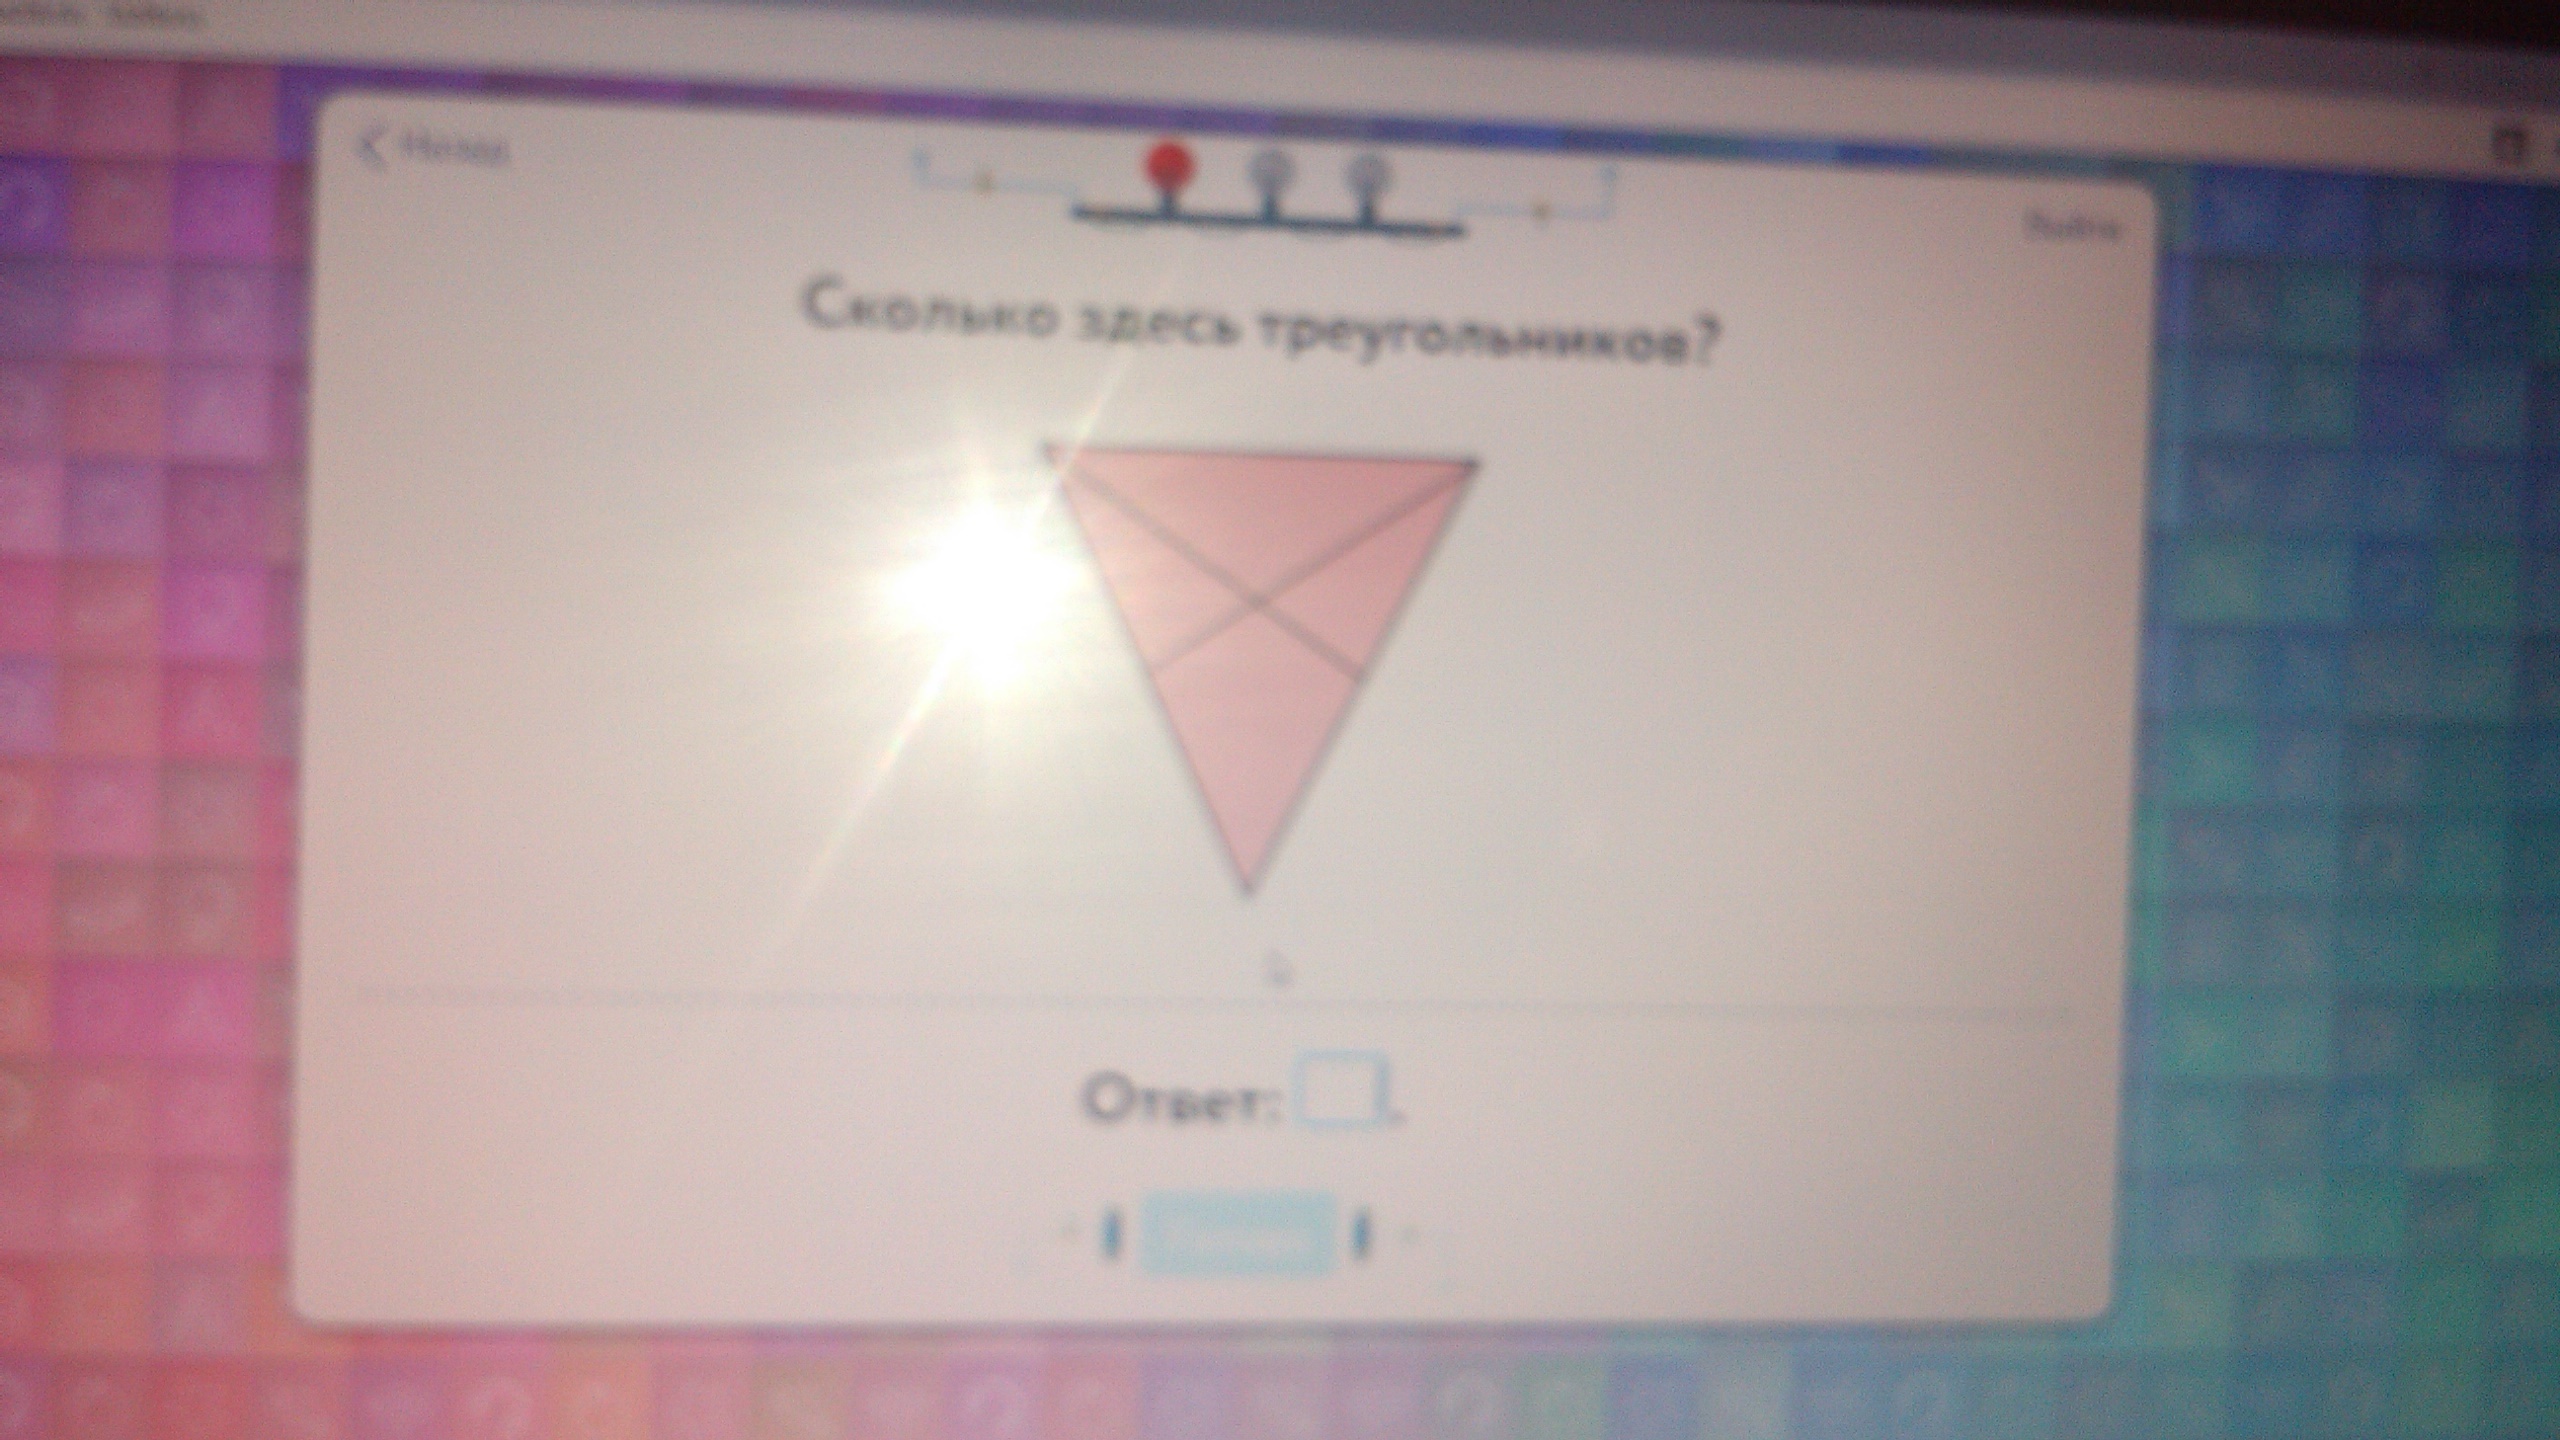 Сколько треугольника учи ру лаборатория. Колько здесь треугольников. Сколько здесь треугольников ответ учи ру. Сколько здесь треугольников учи ру лаборатория. Сколько здесь треугольников ответ учи ру 1 класс лаборатория.